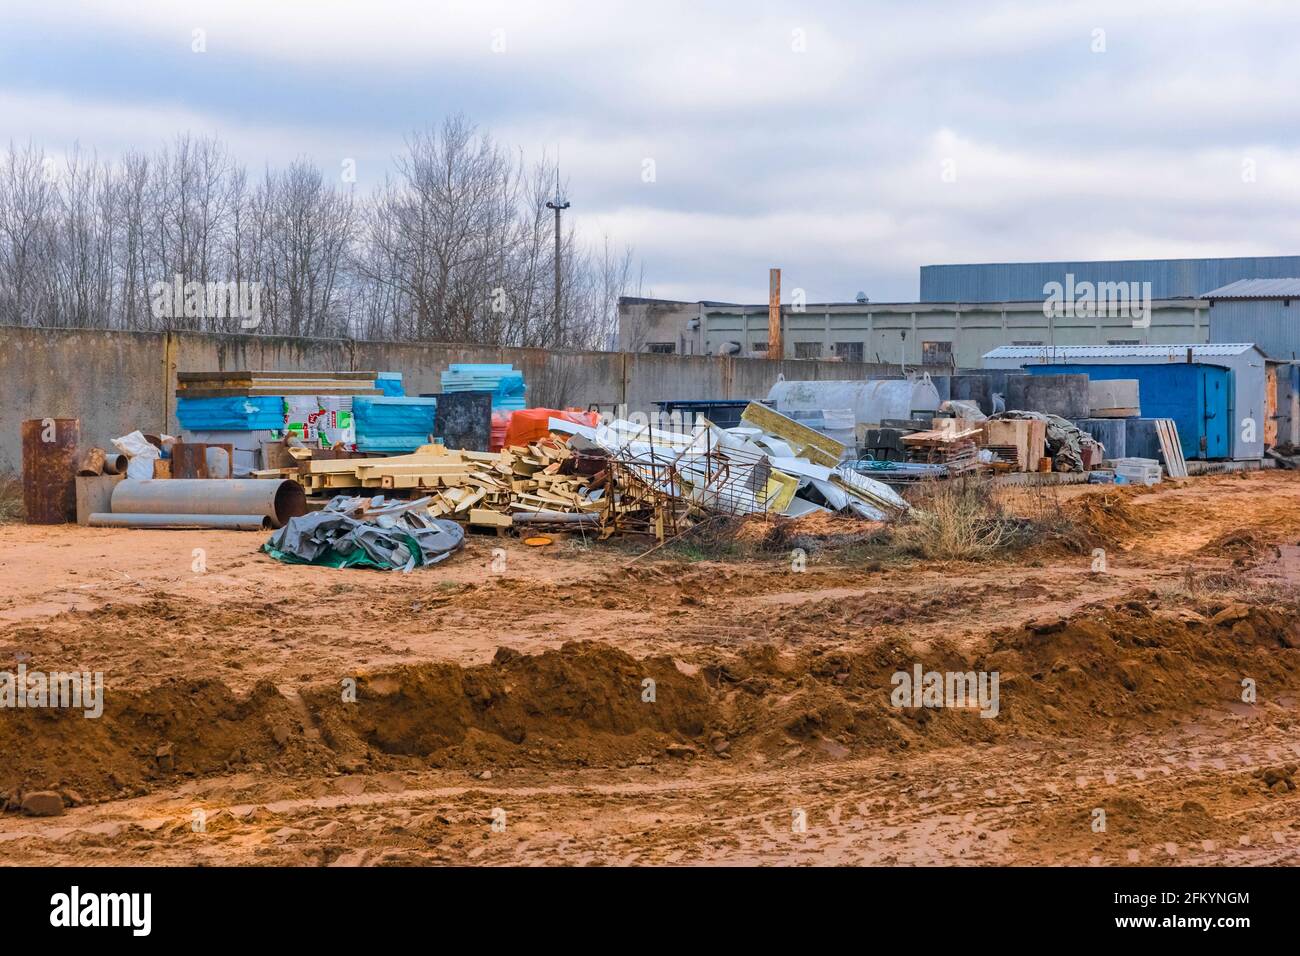 Weißrussland, Region Minsk - 11. Dezember 2019: Lagerung eines Stapels verschiedener Industrieabfälle und Abfälle im offenen Bereich der Baustelle. Stockfoto